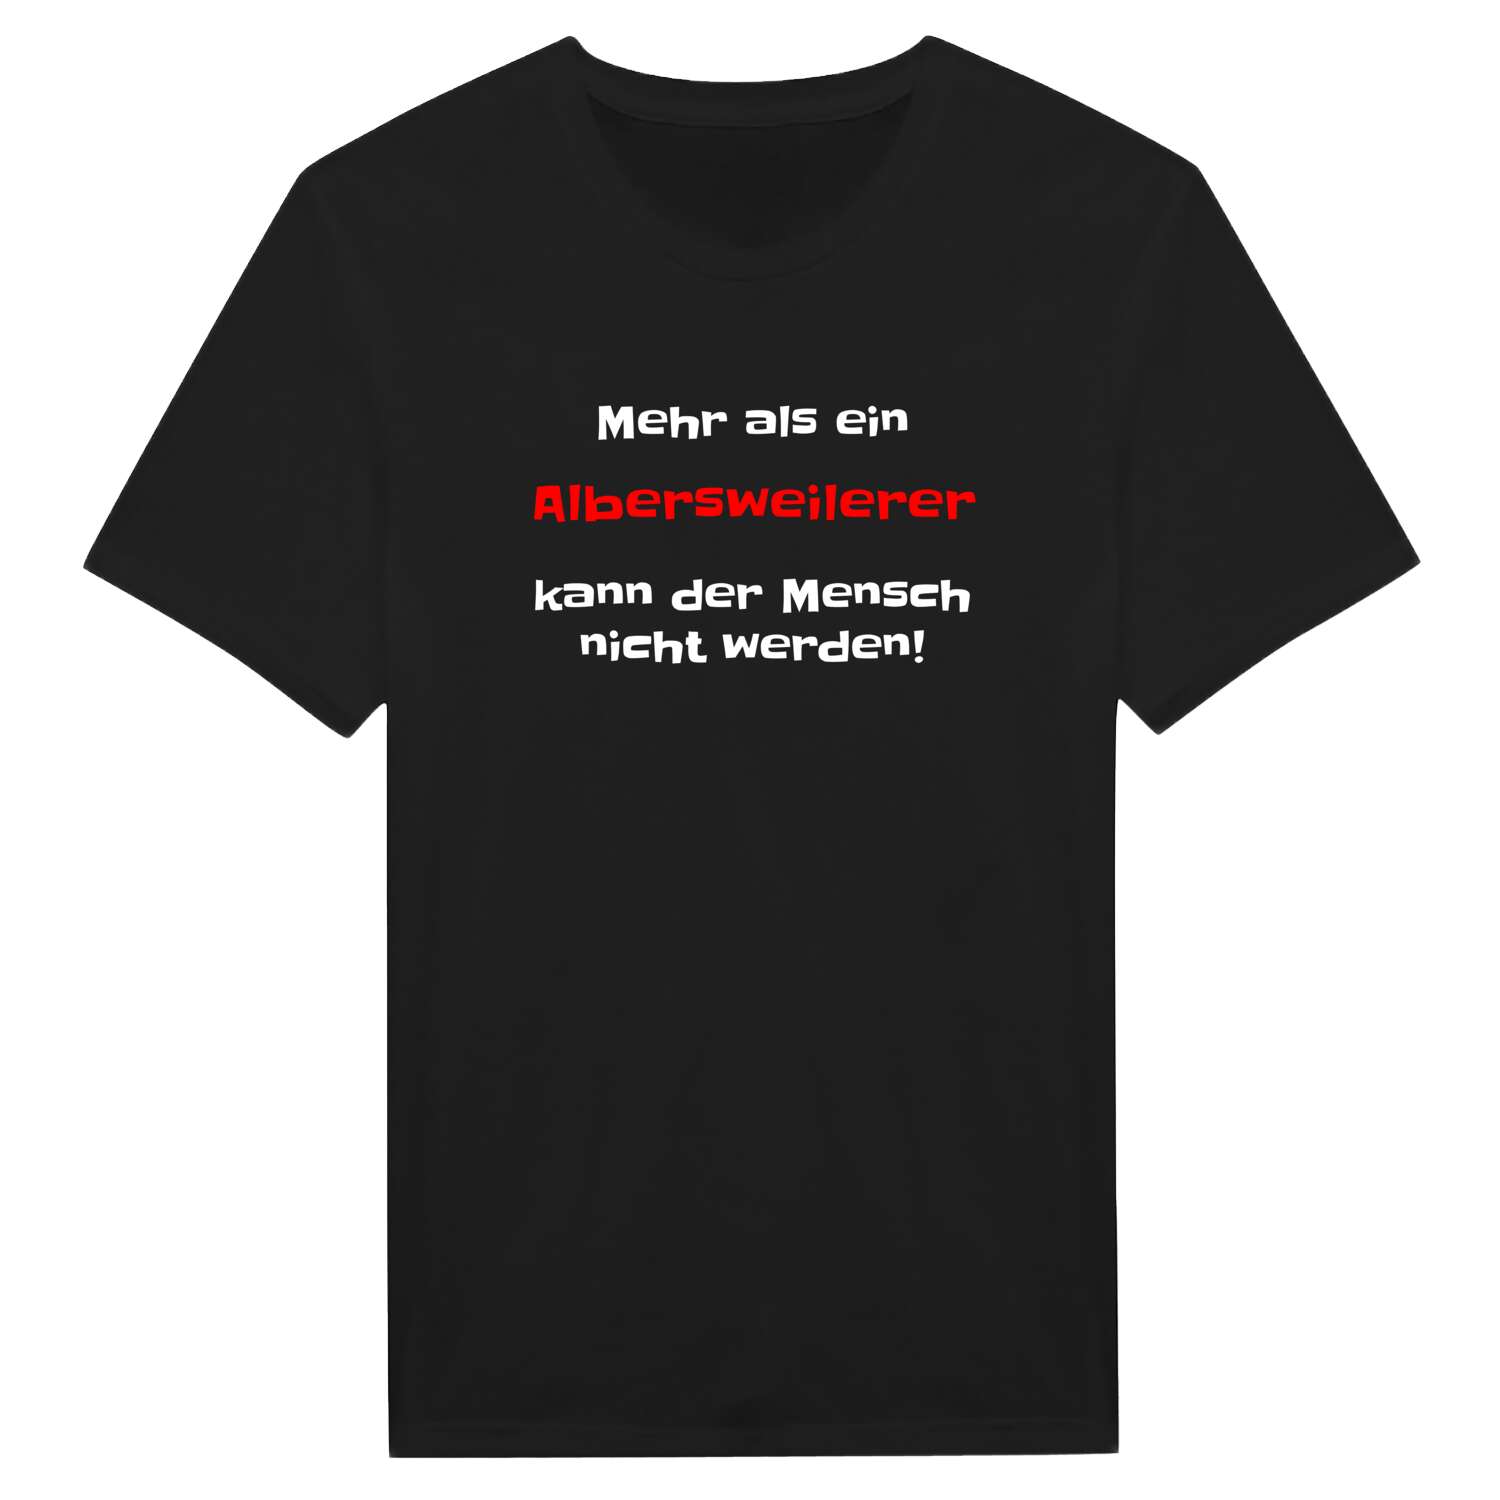 Albersweiler T-Shirt »Mehr als ein«